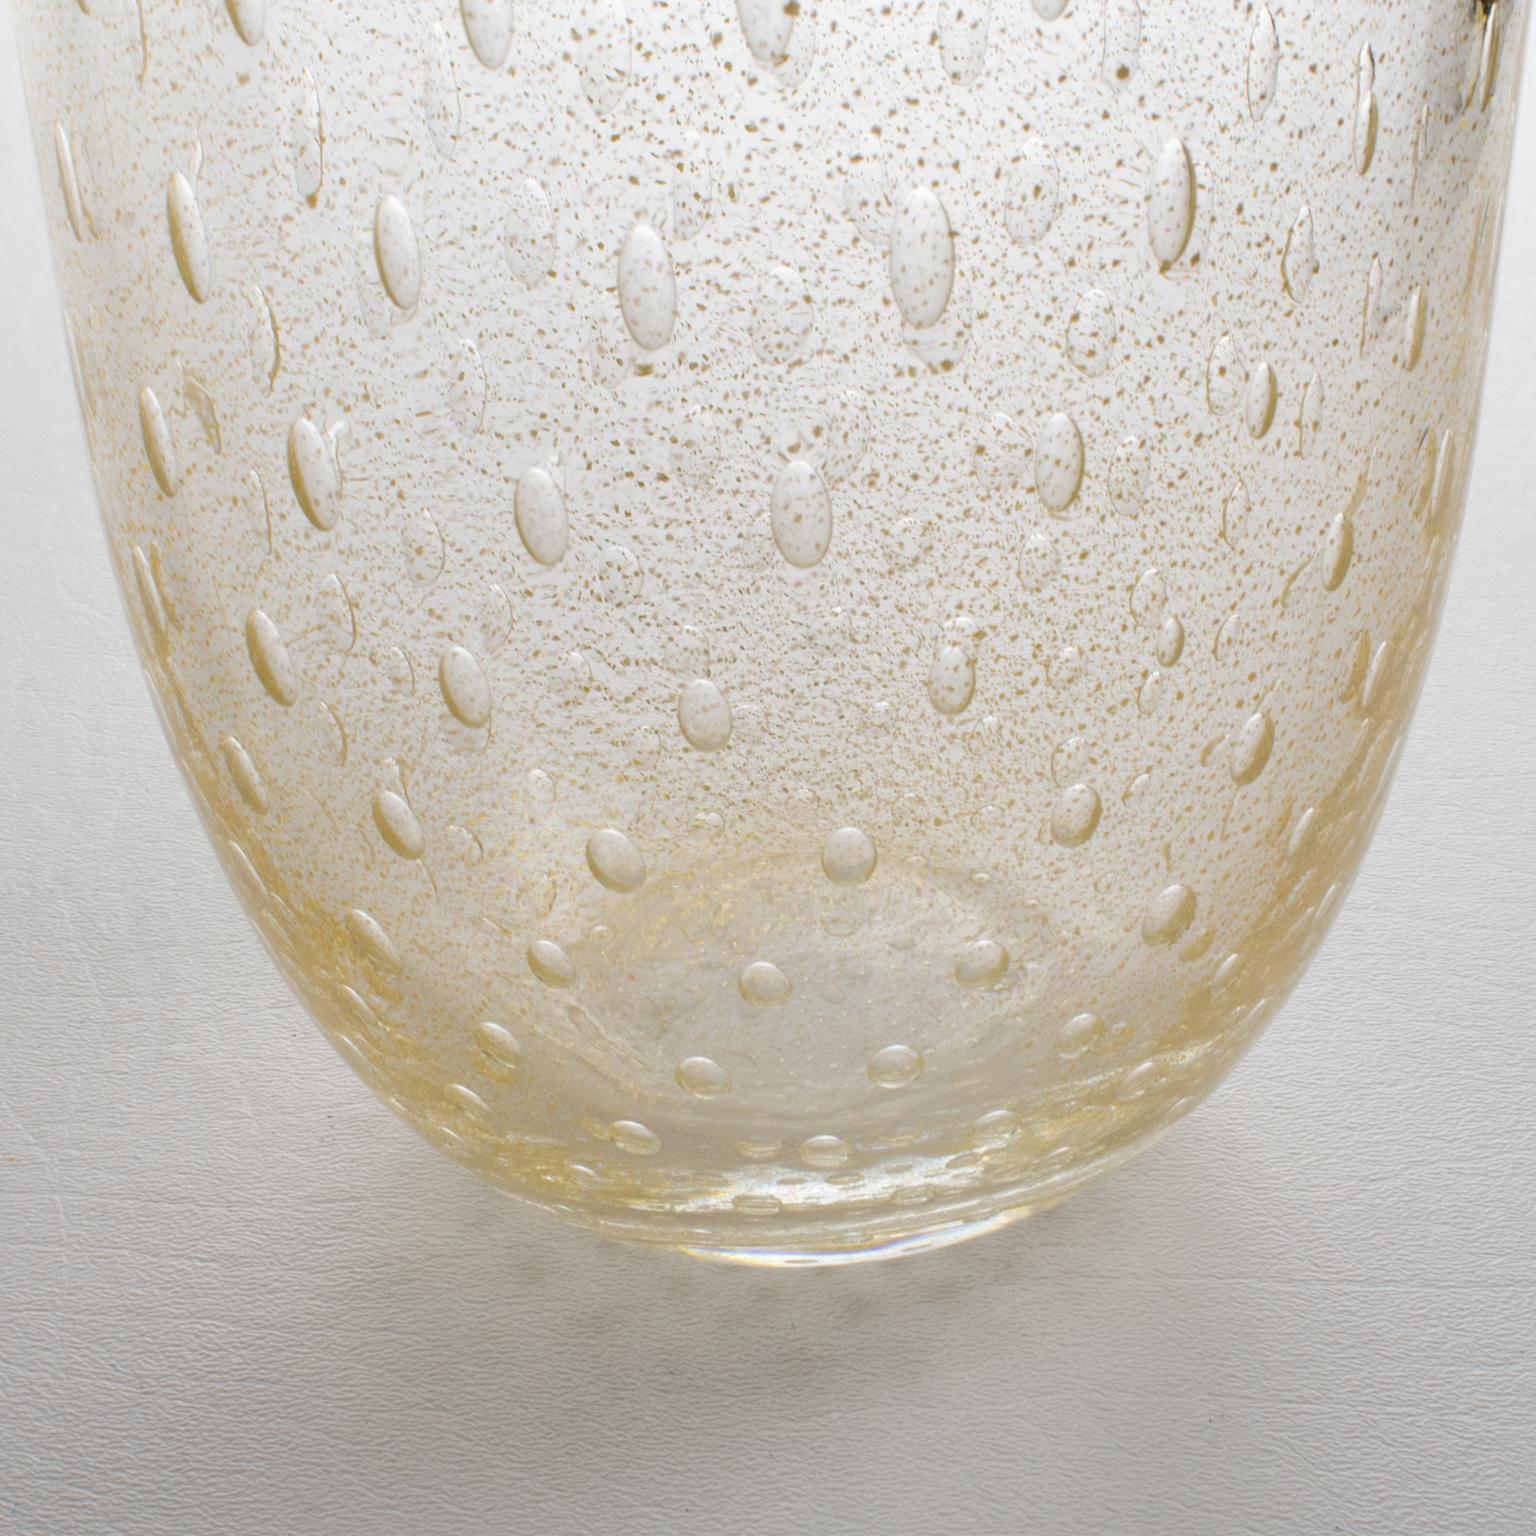 Italian Art Glass Murano Vase Gold Flakes and Bubbles by Gambaro & Poggi For Sale 1